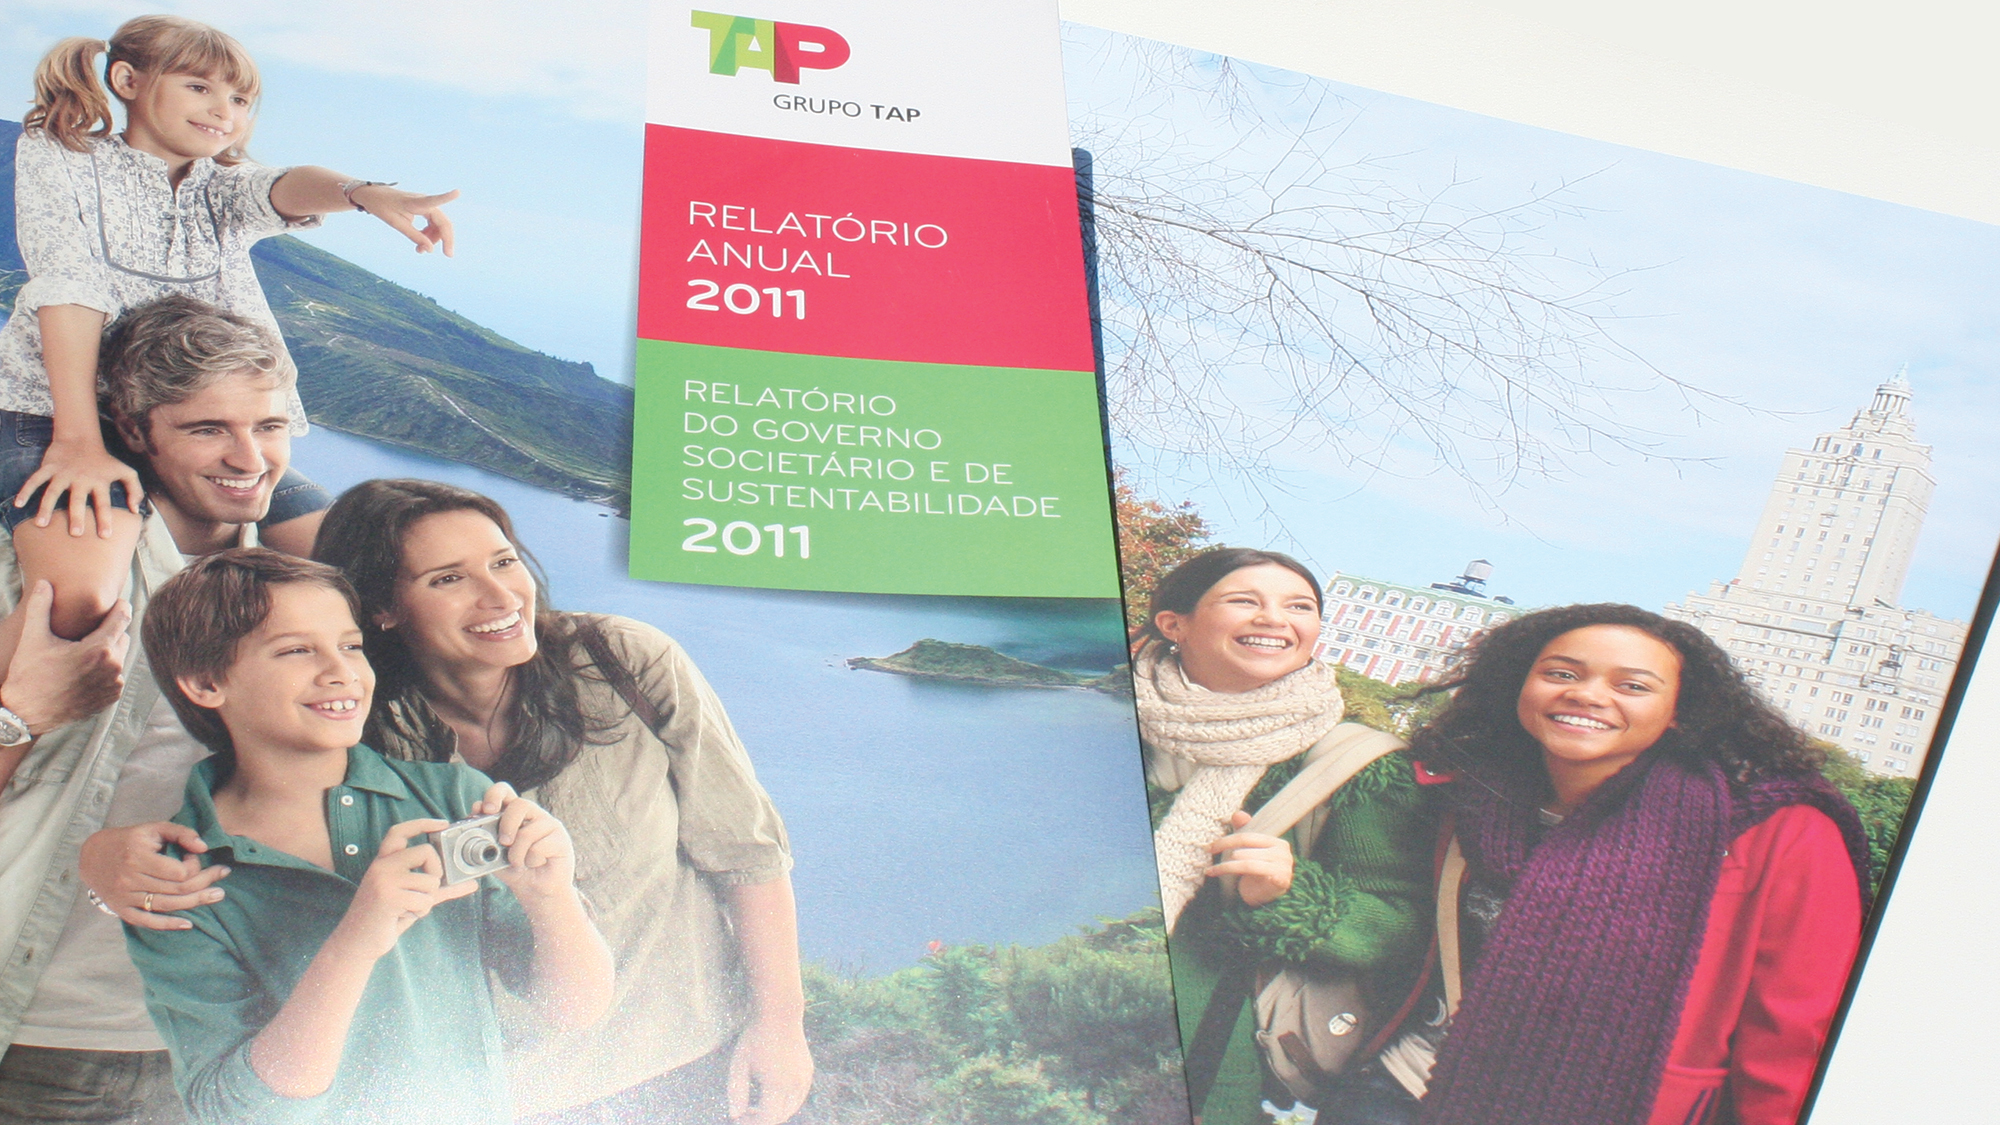 tap relatorio 2011 2